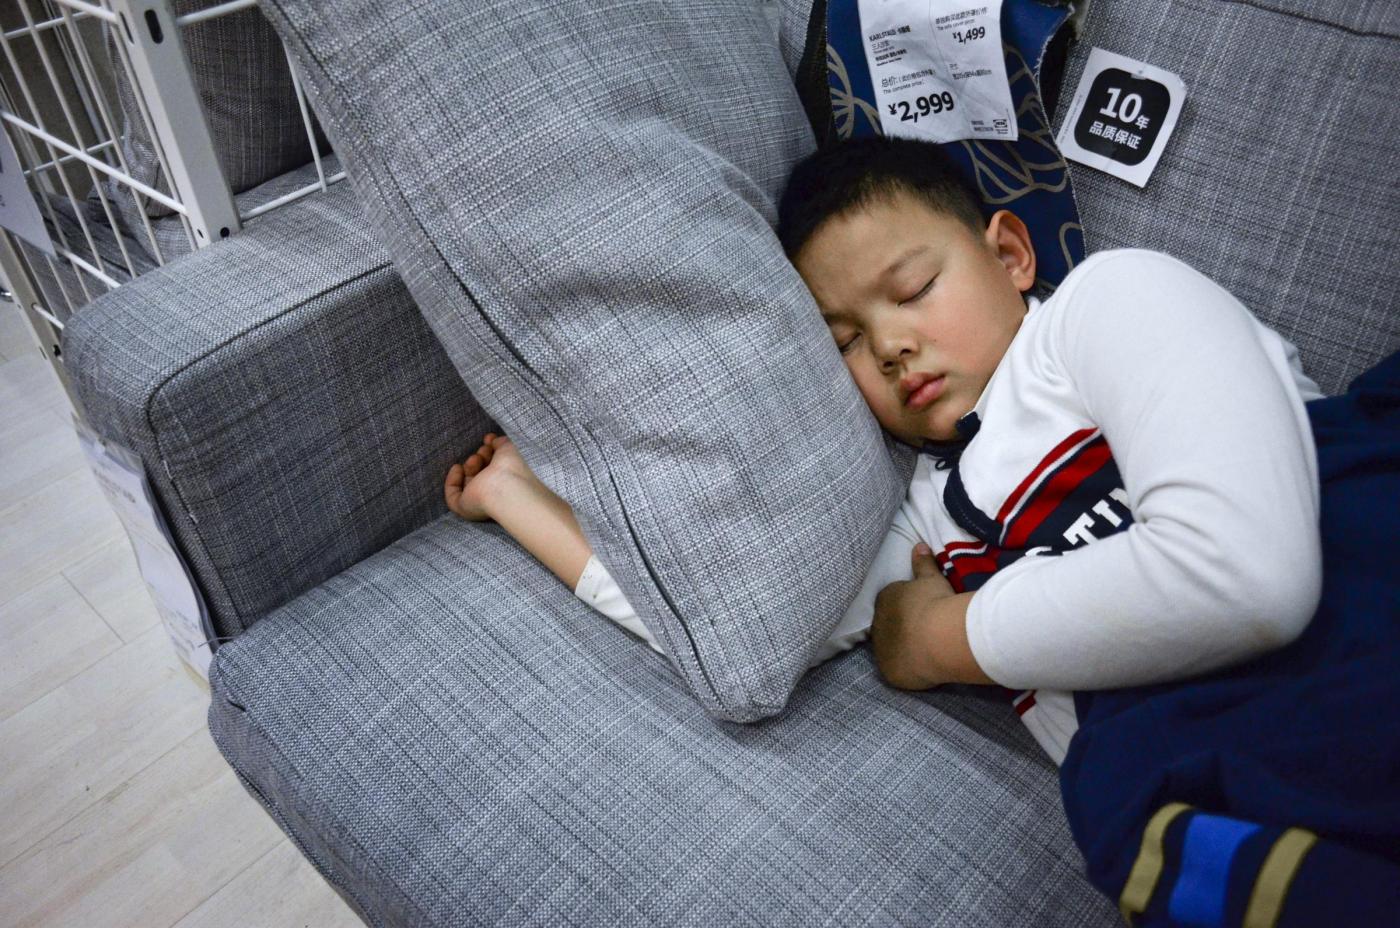 In Cina, i clienti ad Ikea dormono sui letti 06